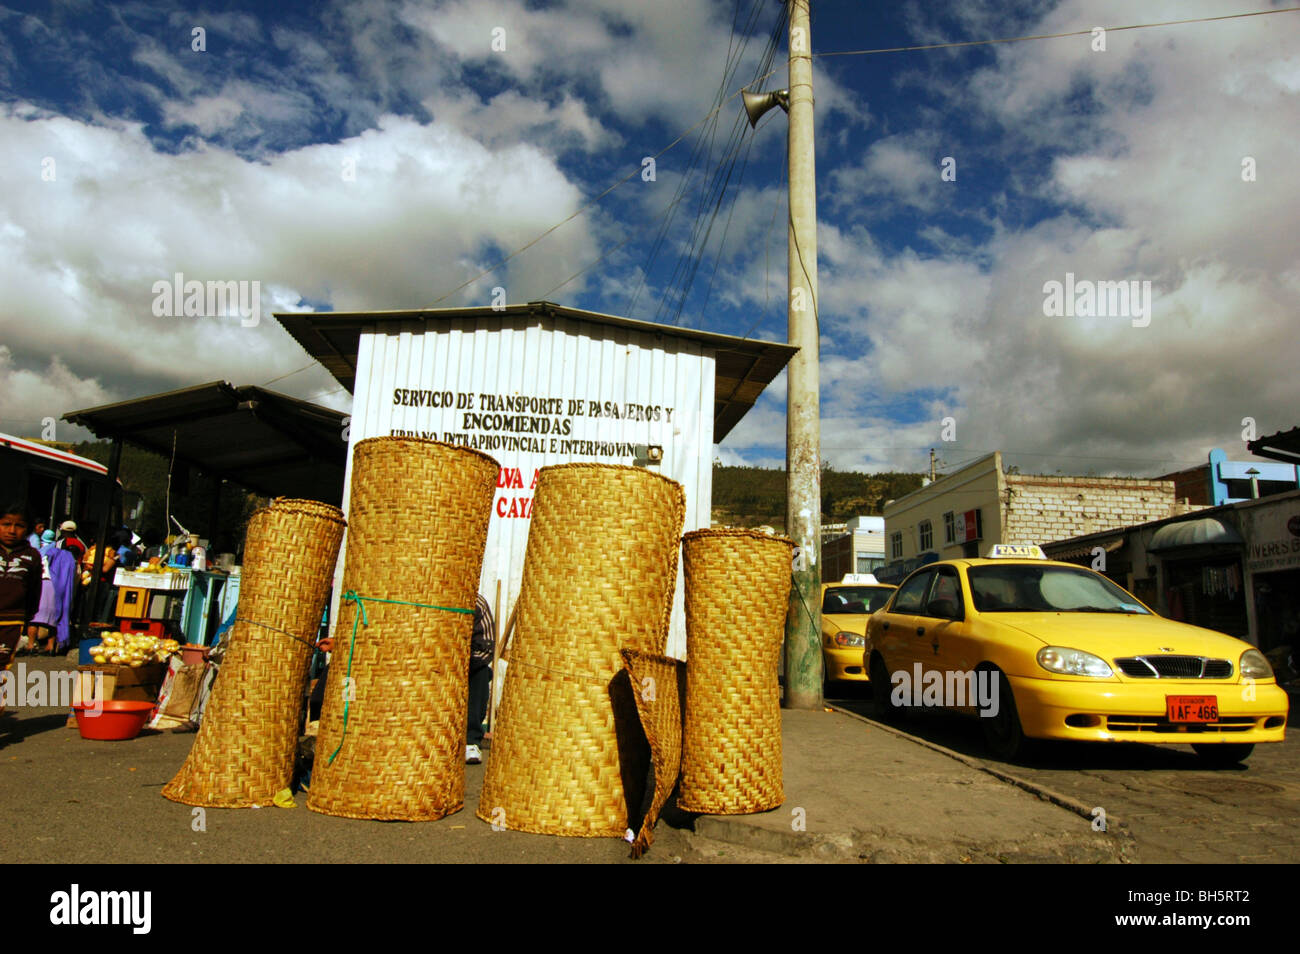 Ecuador, Otavalo, gefaltet Wicker Matratzen in einer Zeile durch ein gelbes  Taxi auf der Straße weiter, eine Bushaltestelle, gegen bewölktem Himmel  Stockfotografie - Alamy